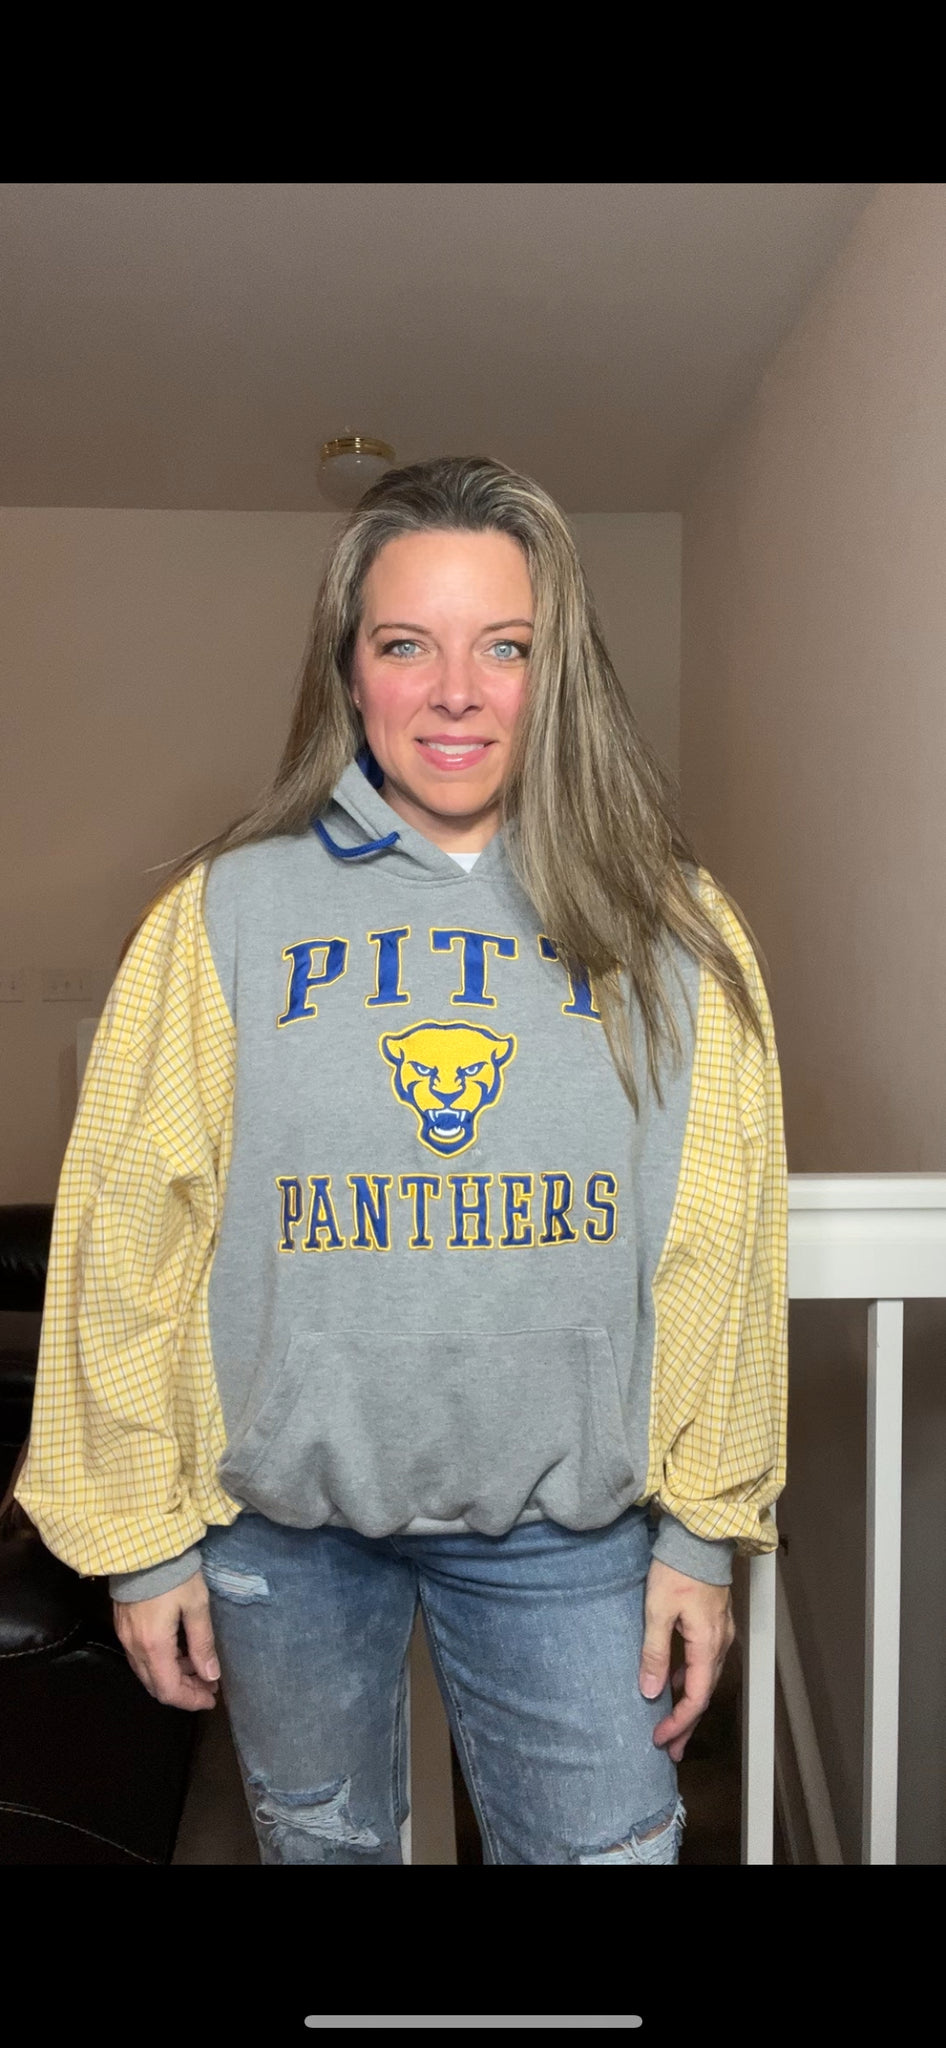 Pitt Panthers - woman’s S/M